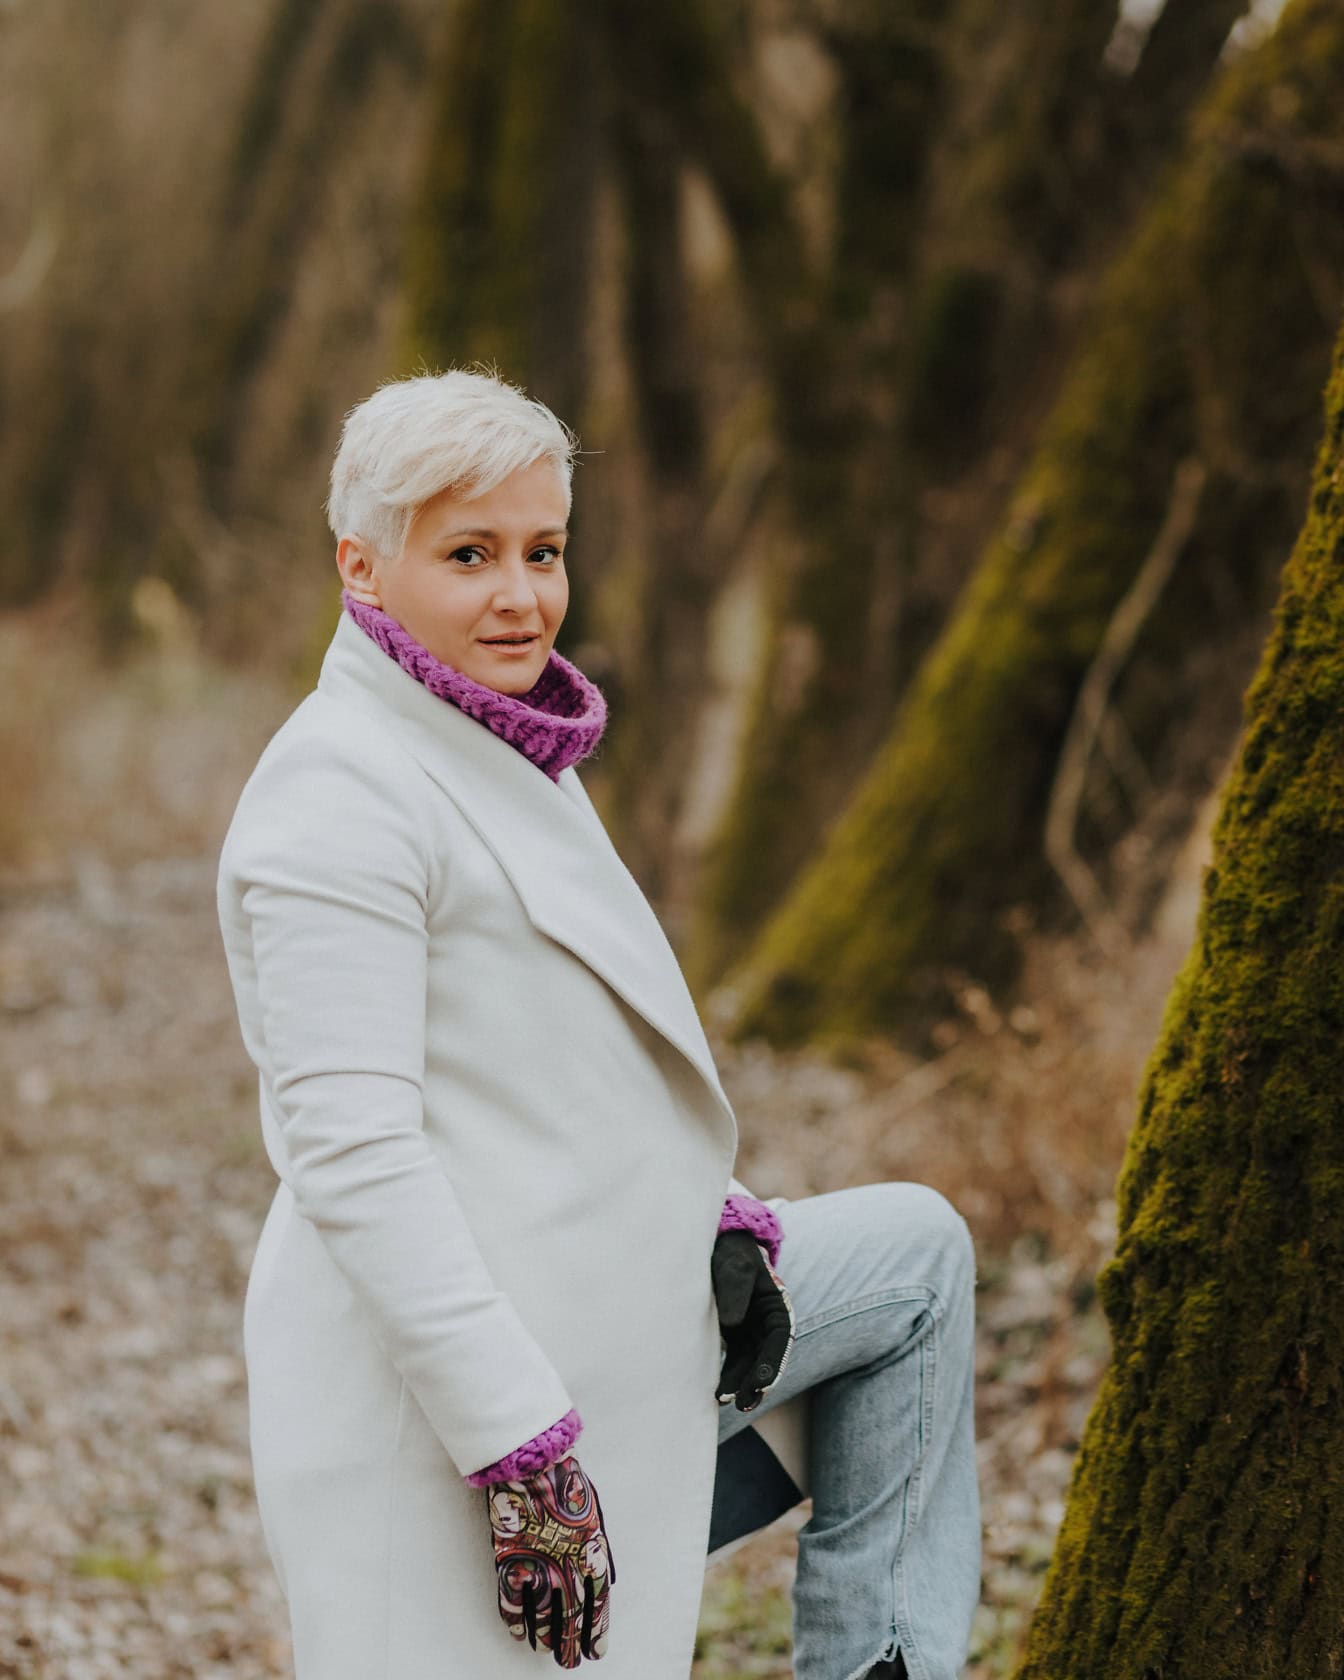 Nainen, jolla on valkoiset lyhyet vaaleat hiukset valkoisessa takissa ja violetissa neulotussa villapaidassa, poseeraa kuvassa nojaten jalkaansa puuta vasten